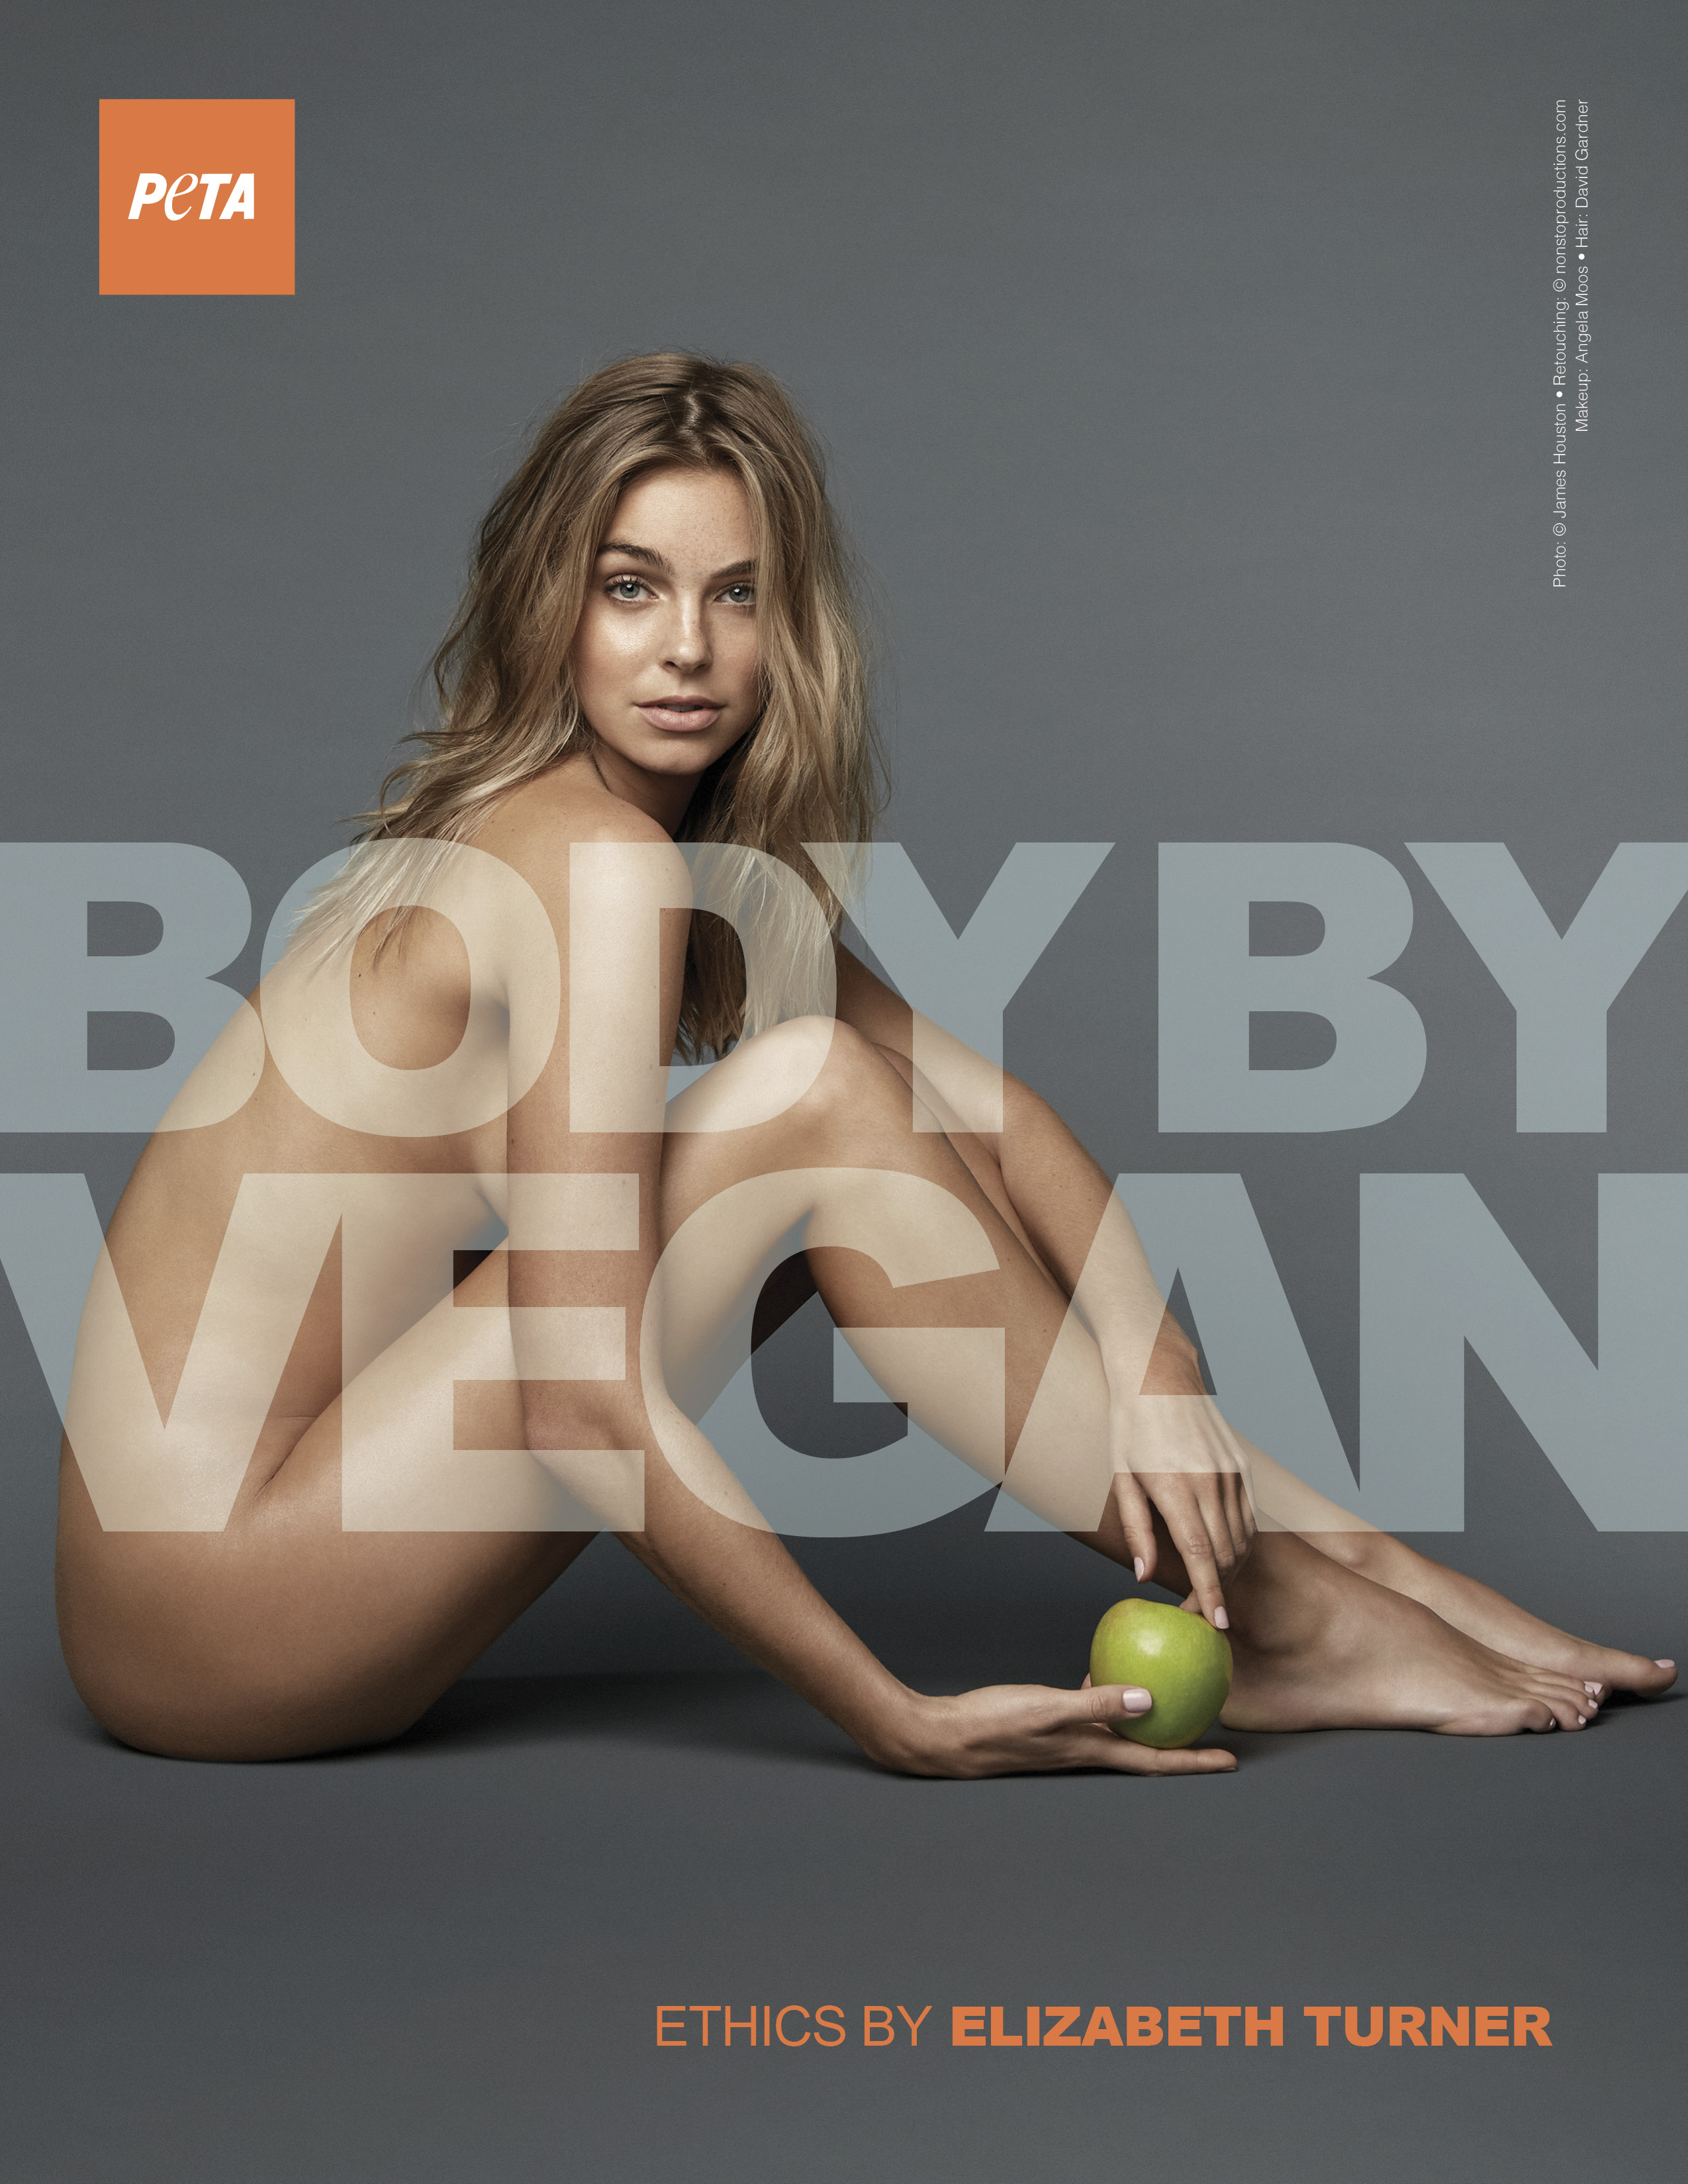 That vegan teacher nude